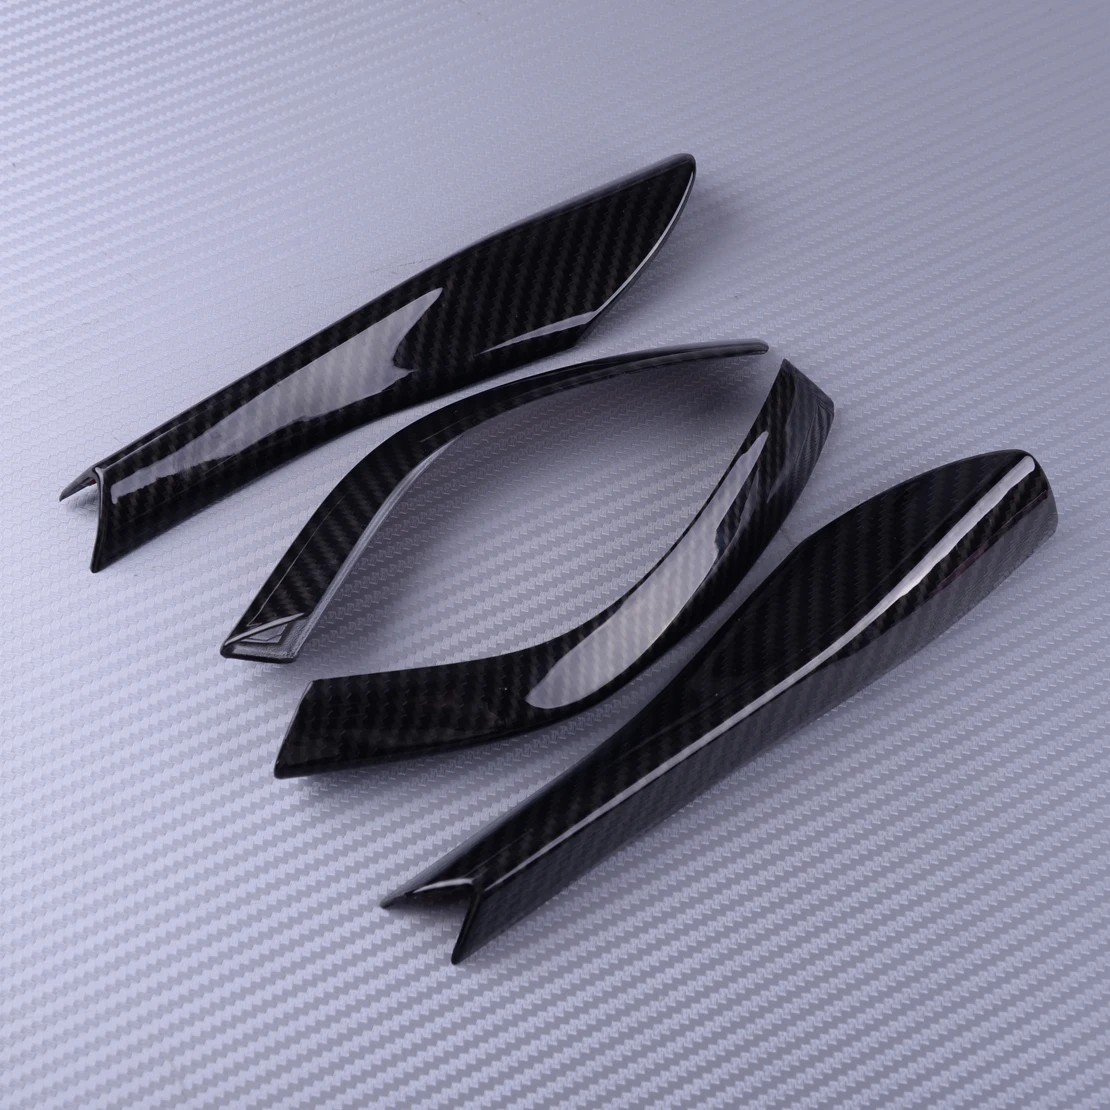 DWCX 4 шт. автомобильный Стайлинг из углеродного волокна стиль зеркало заднего вида литье полосы накладка черный ABS Подходит для Ford Mustang